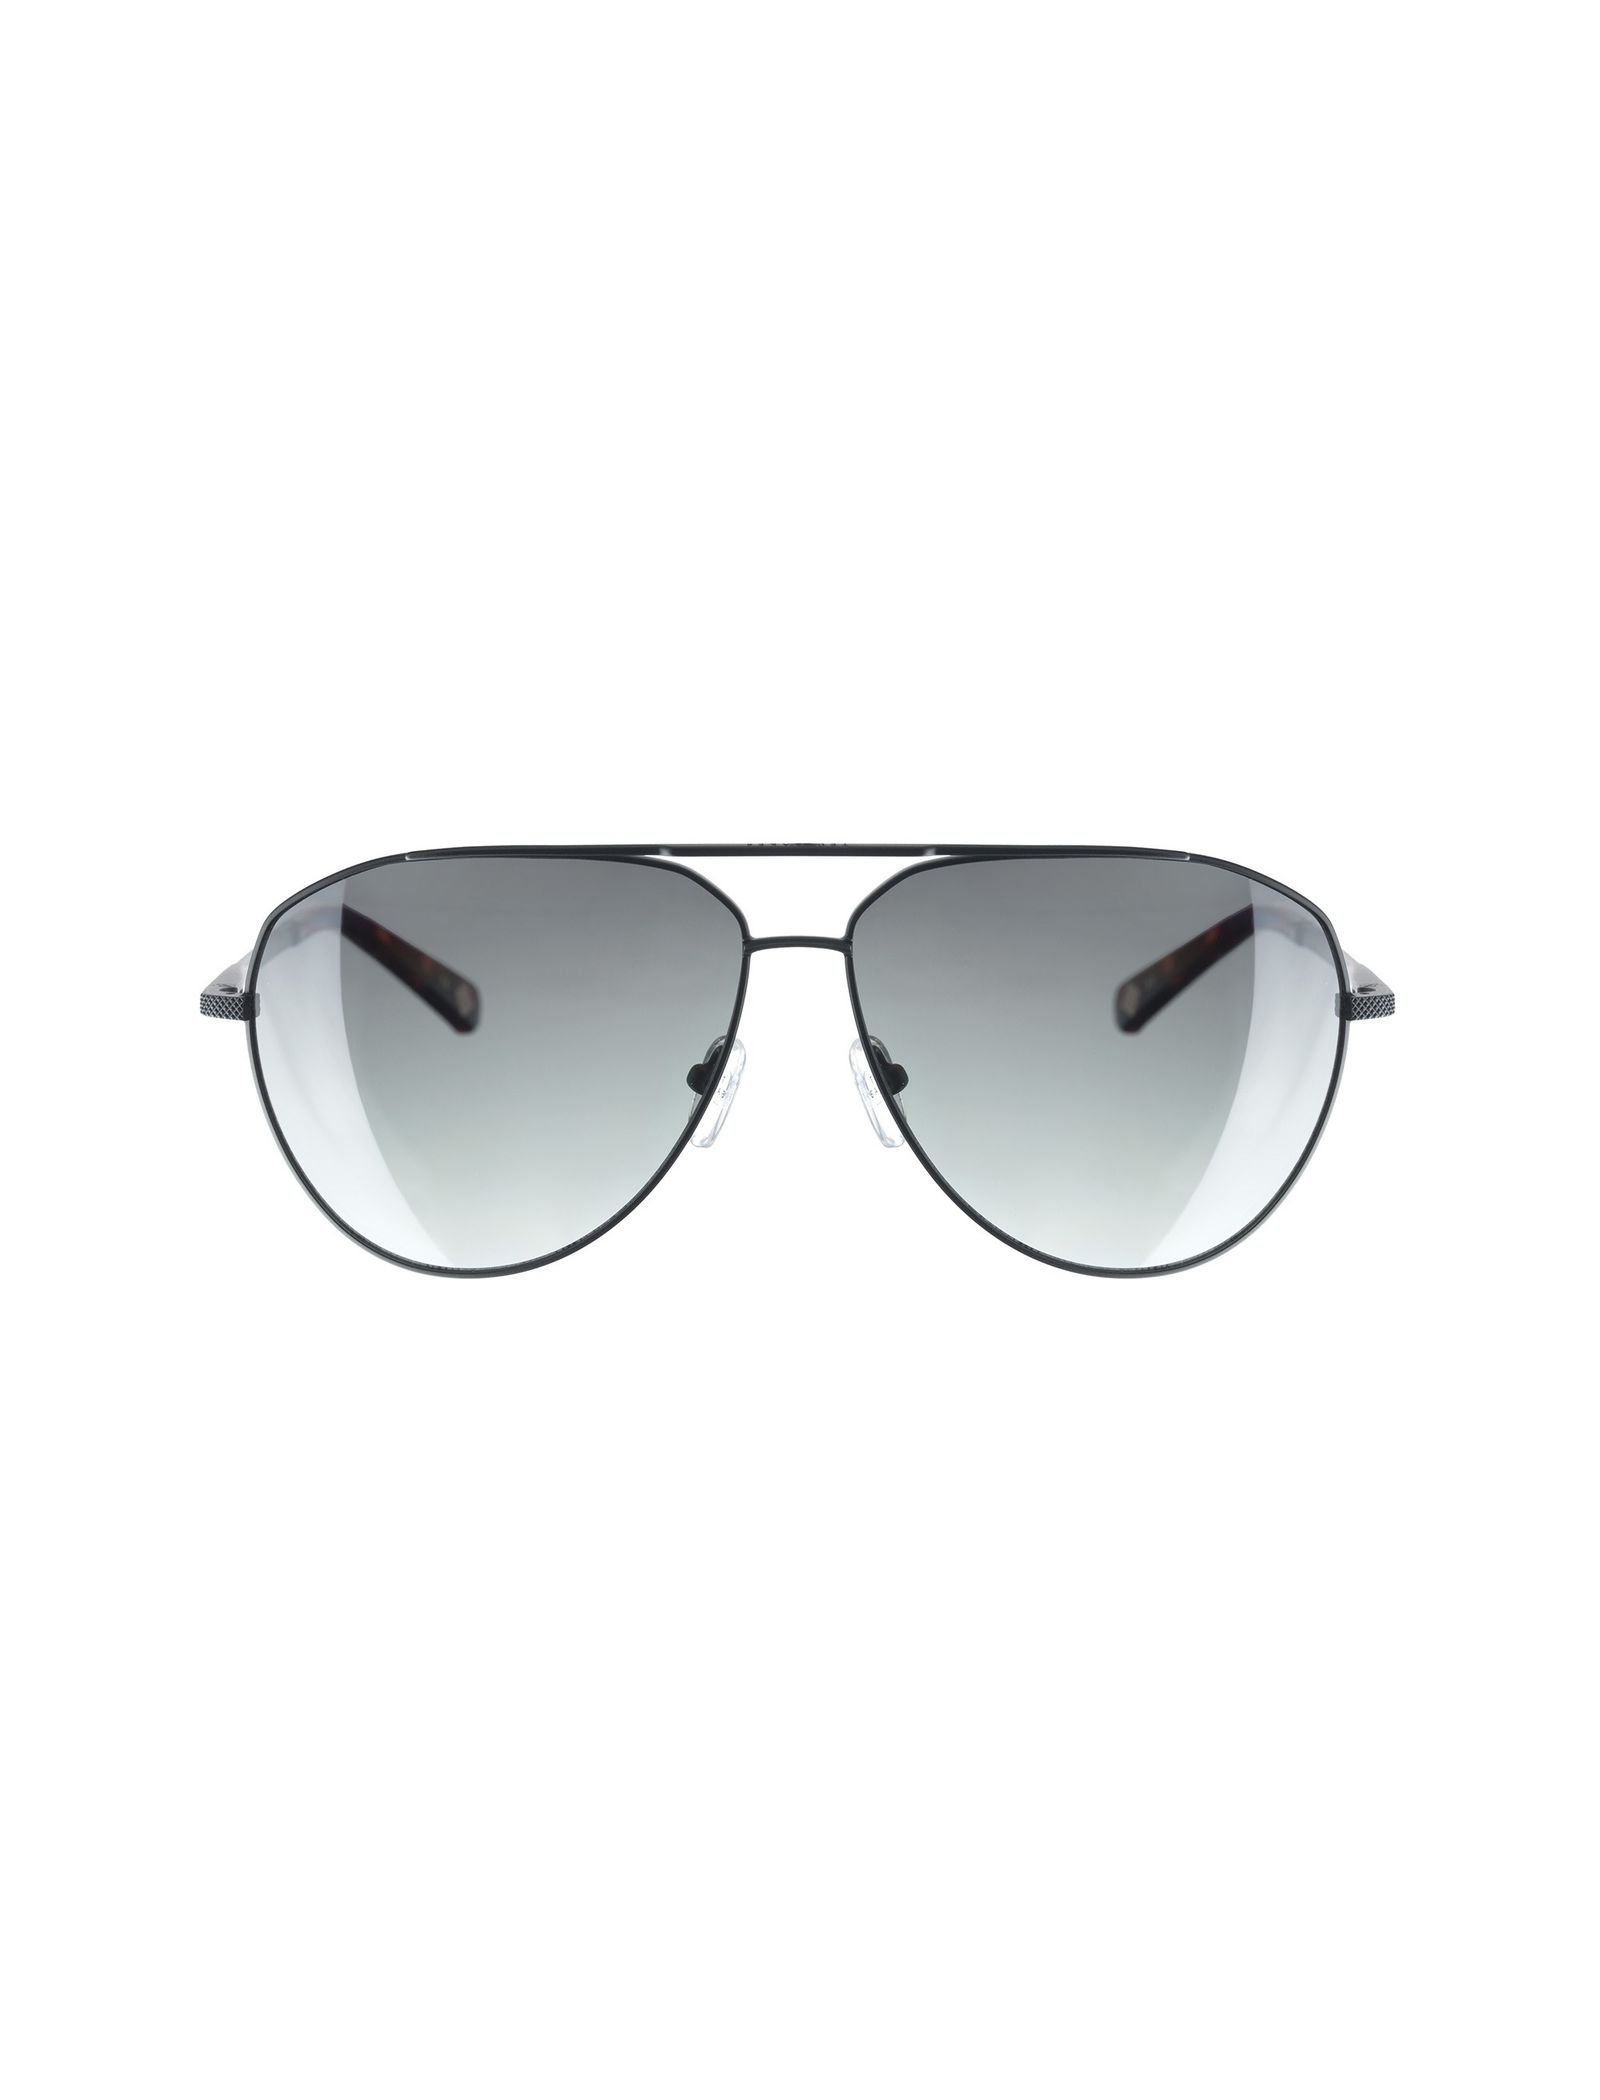 عینک آفتابی خلبانی بزرگسال - تد بیکر - مشکي - 2